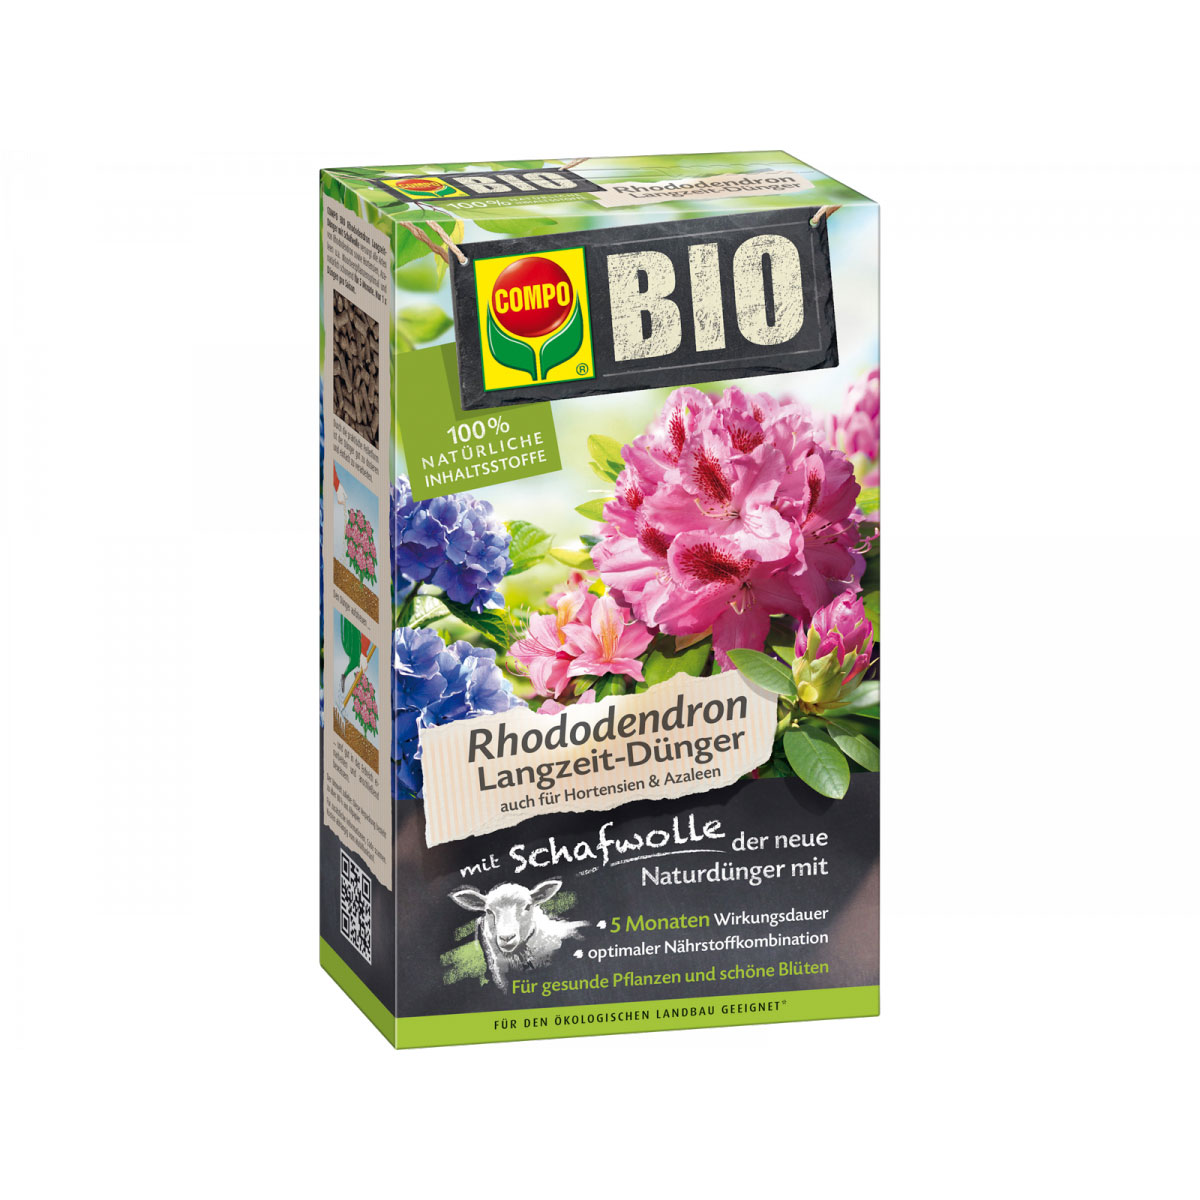 BIO Rhododendron- & Hortensien Langzeit-Dünger mit Schafwolle, 0,75 L